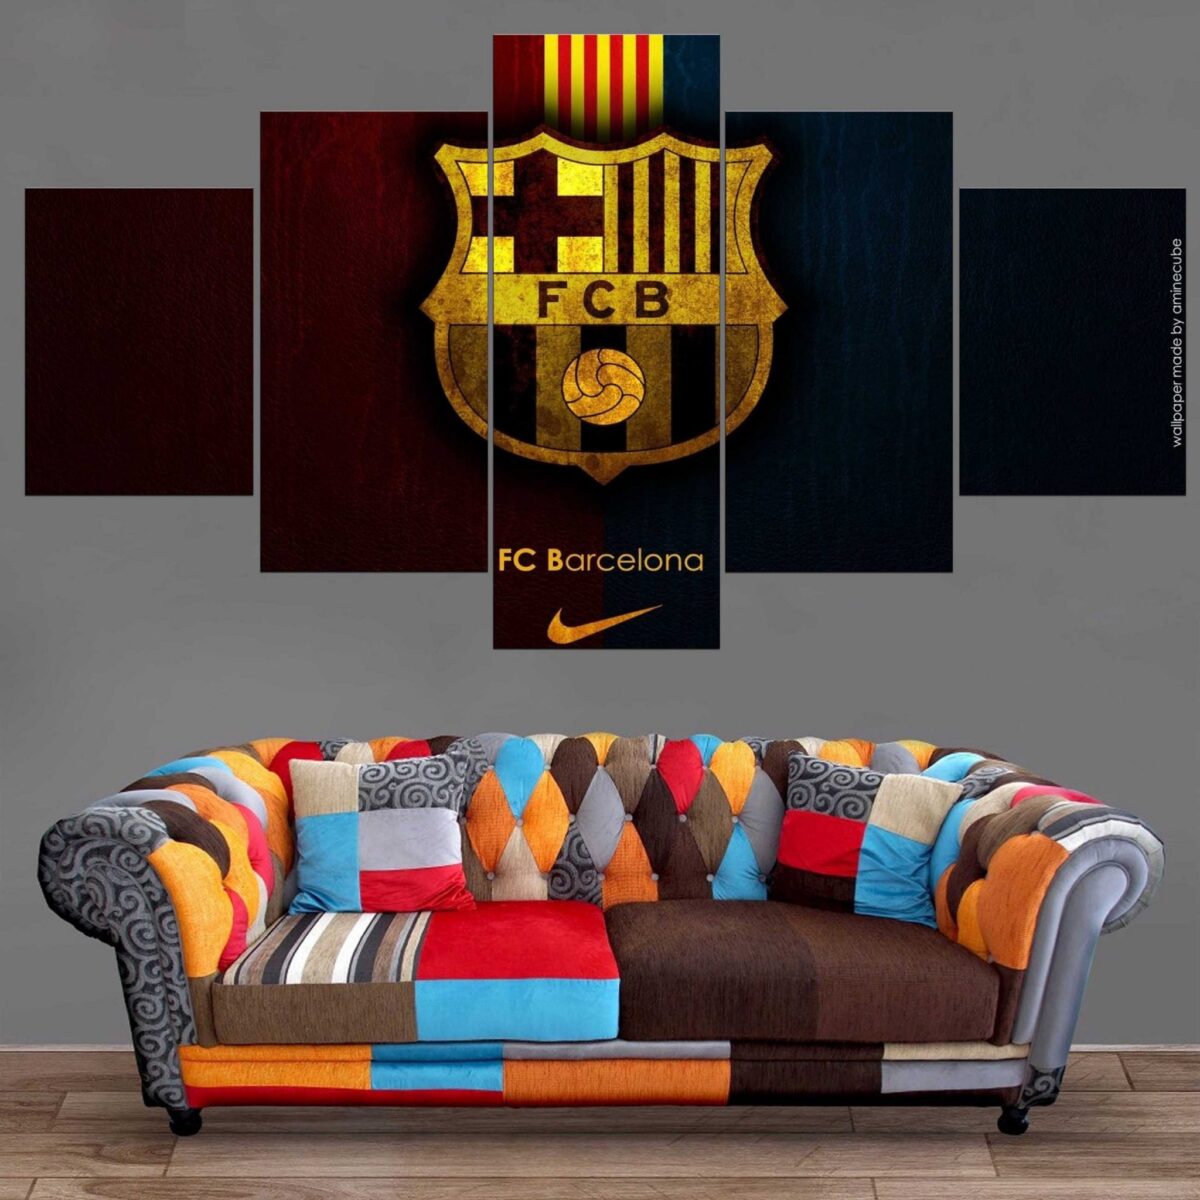 Décoration Murale Football FC Barcelona